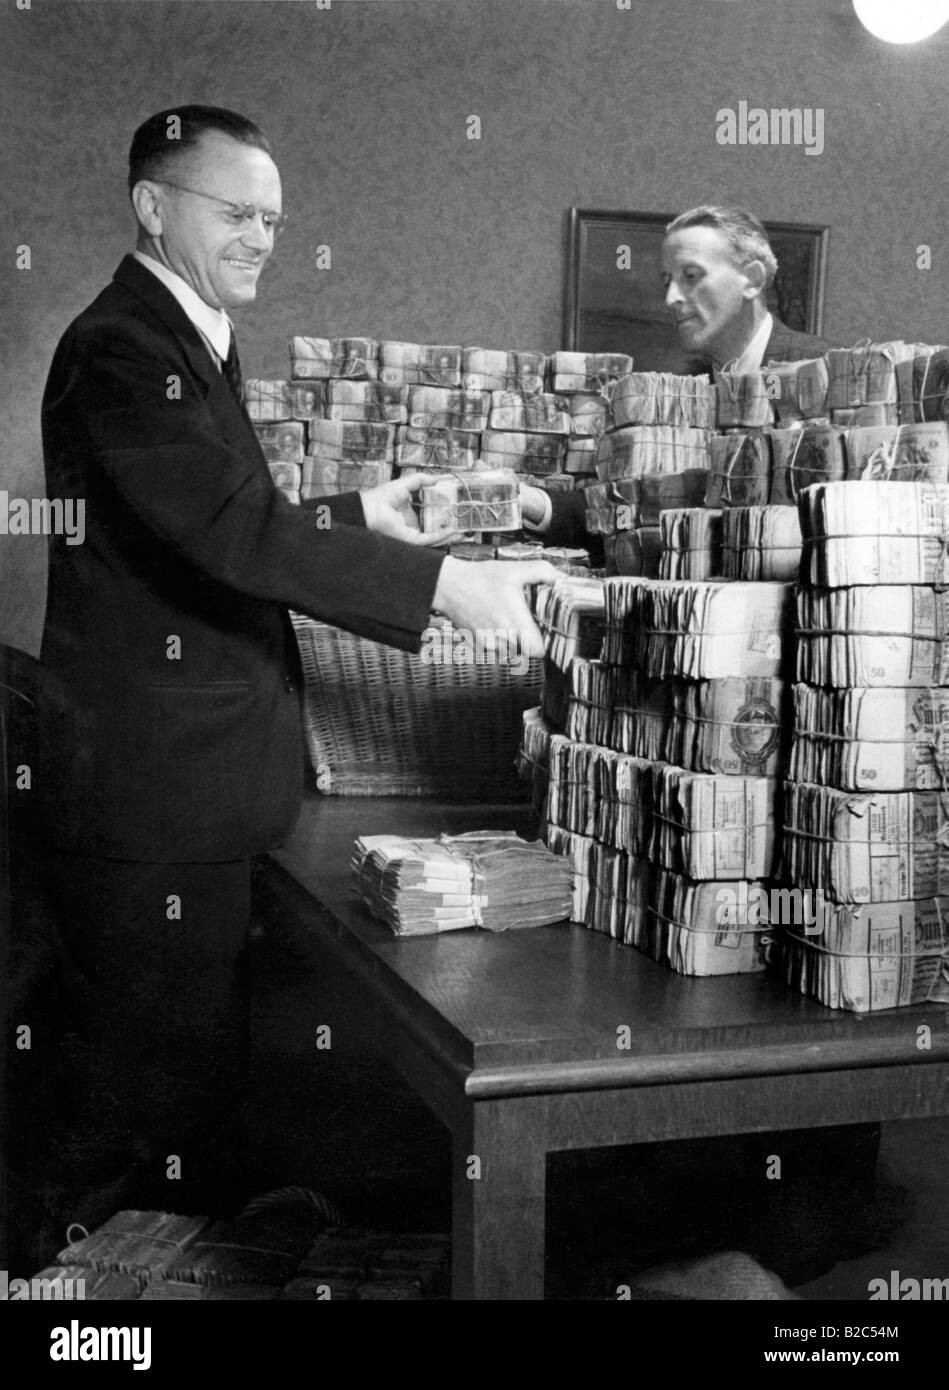 Gli uomini accumulando denaro durante la riforma monetaria, foto storiche, 21 giugno 1948 Foto Stock